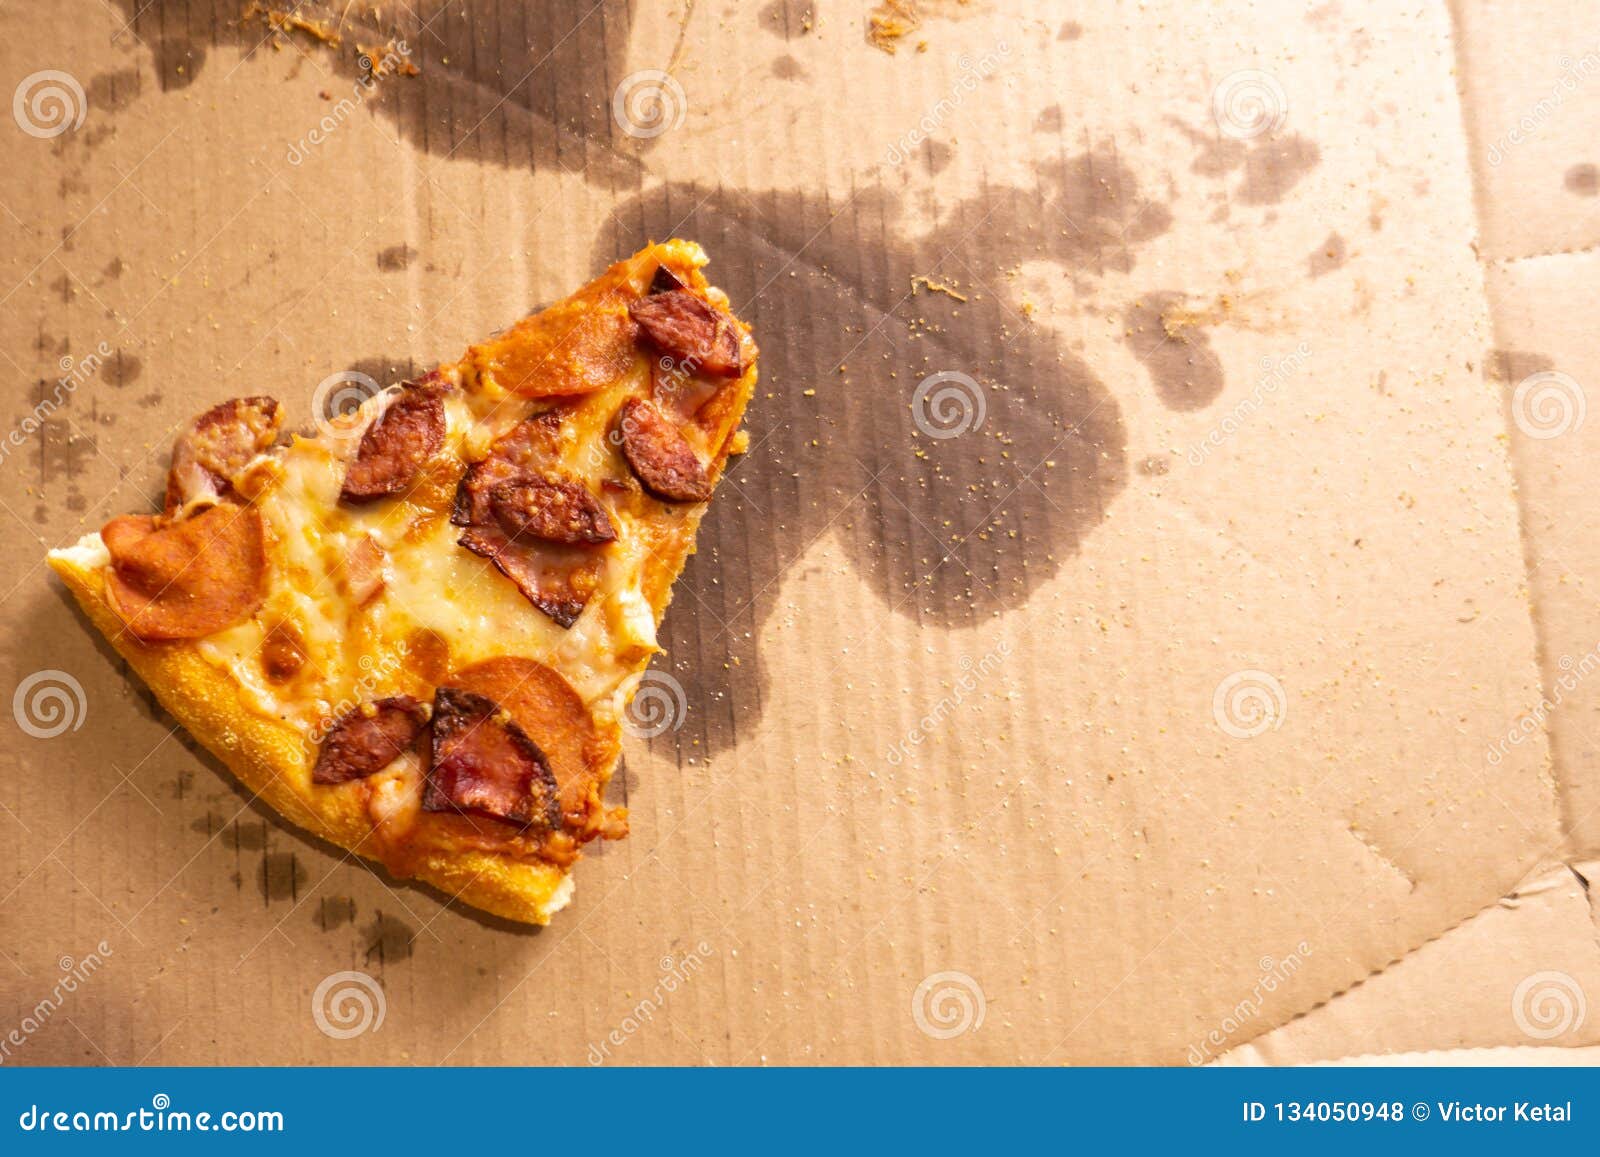 что сделать с тестом если осталось от пиццы фото 119